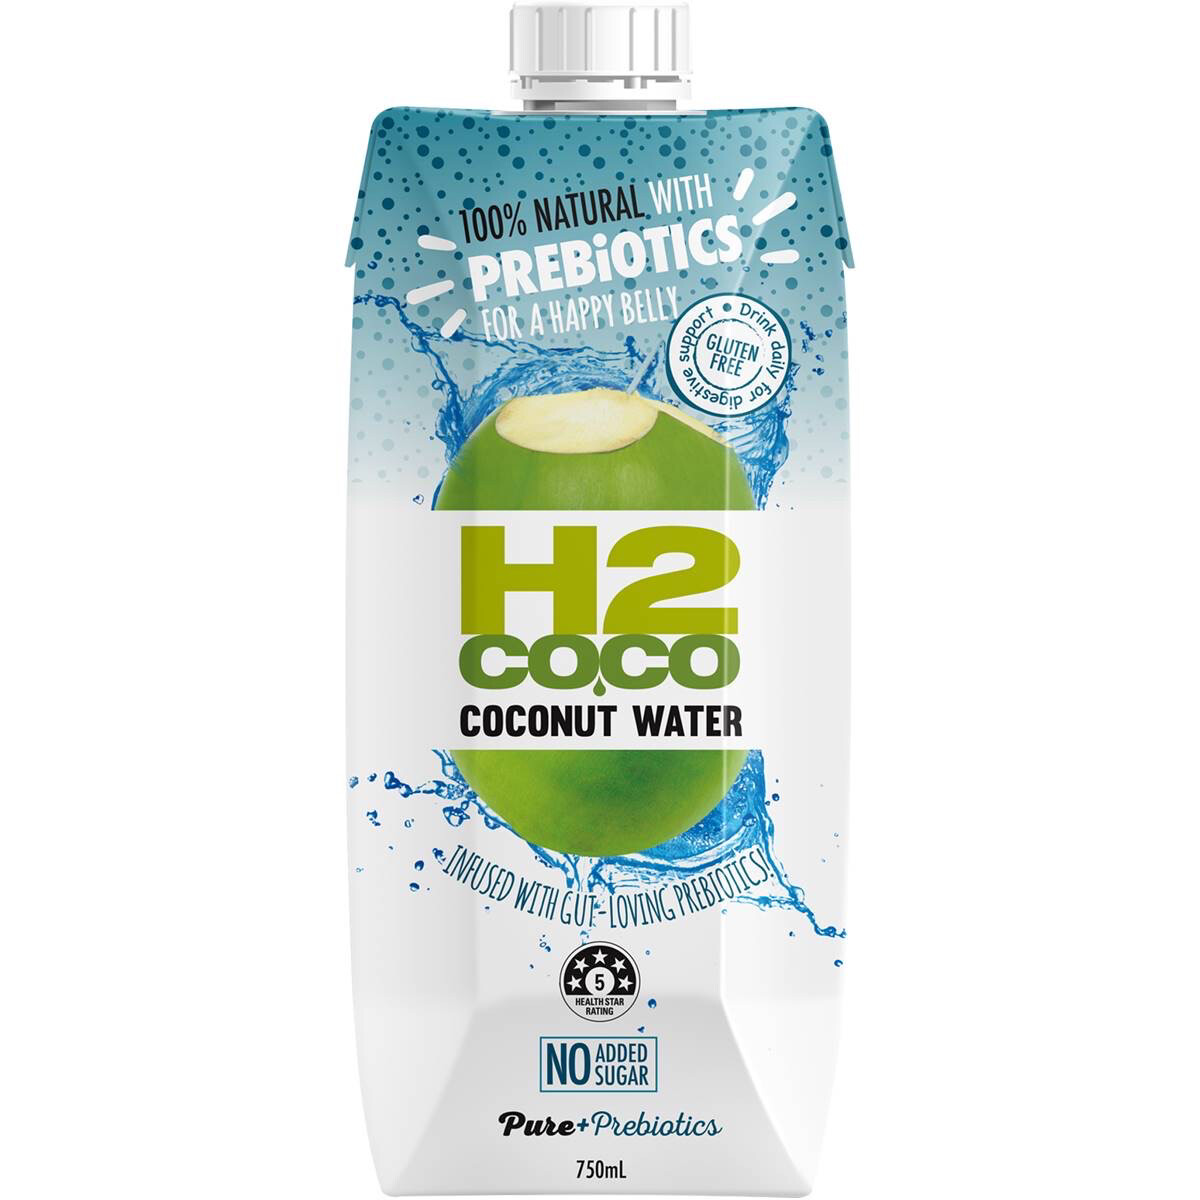 H2Coco Coconut Water Prebiotics For A Happy Belly  No Sugar Added